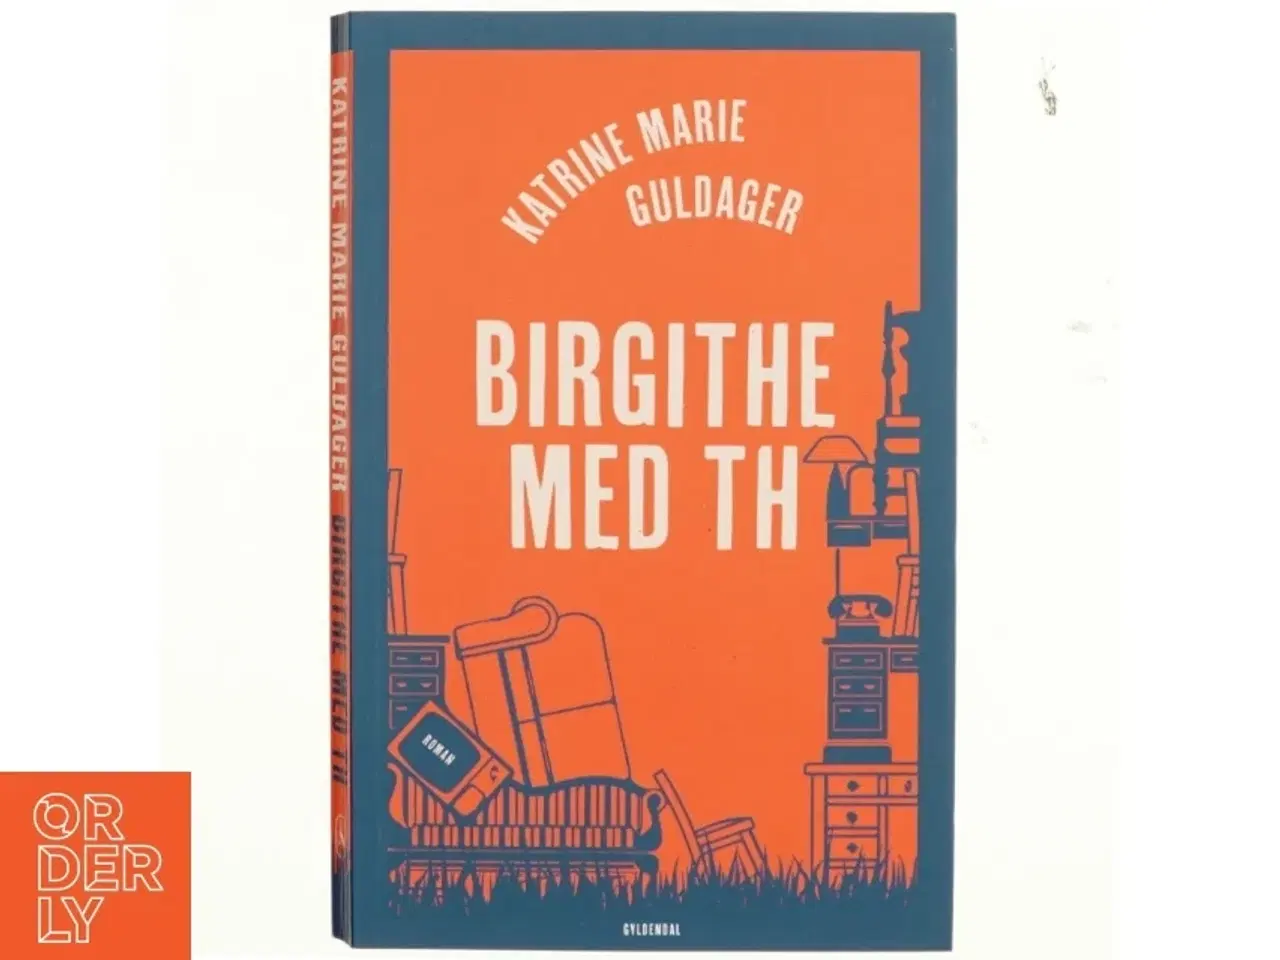 Billede 1 - Birgithe med th : roman (Læseklubpose) af Katrine Marie Guldager (Bog)